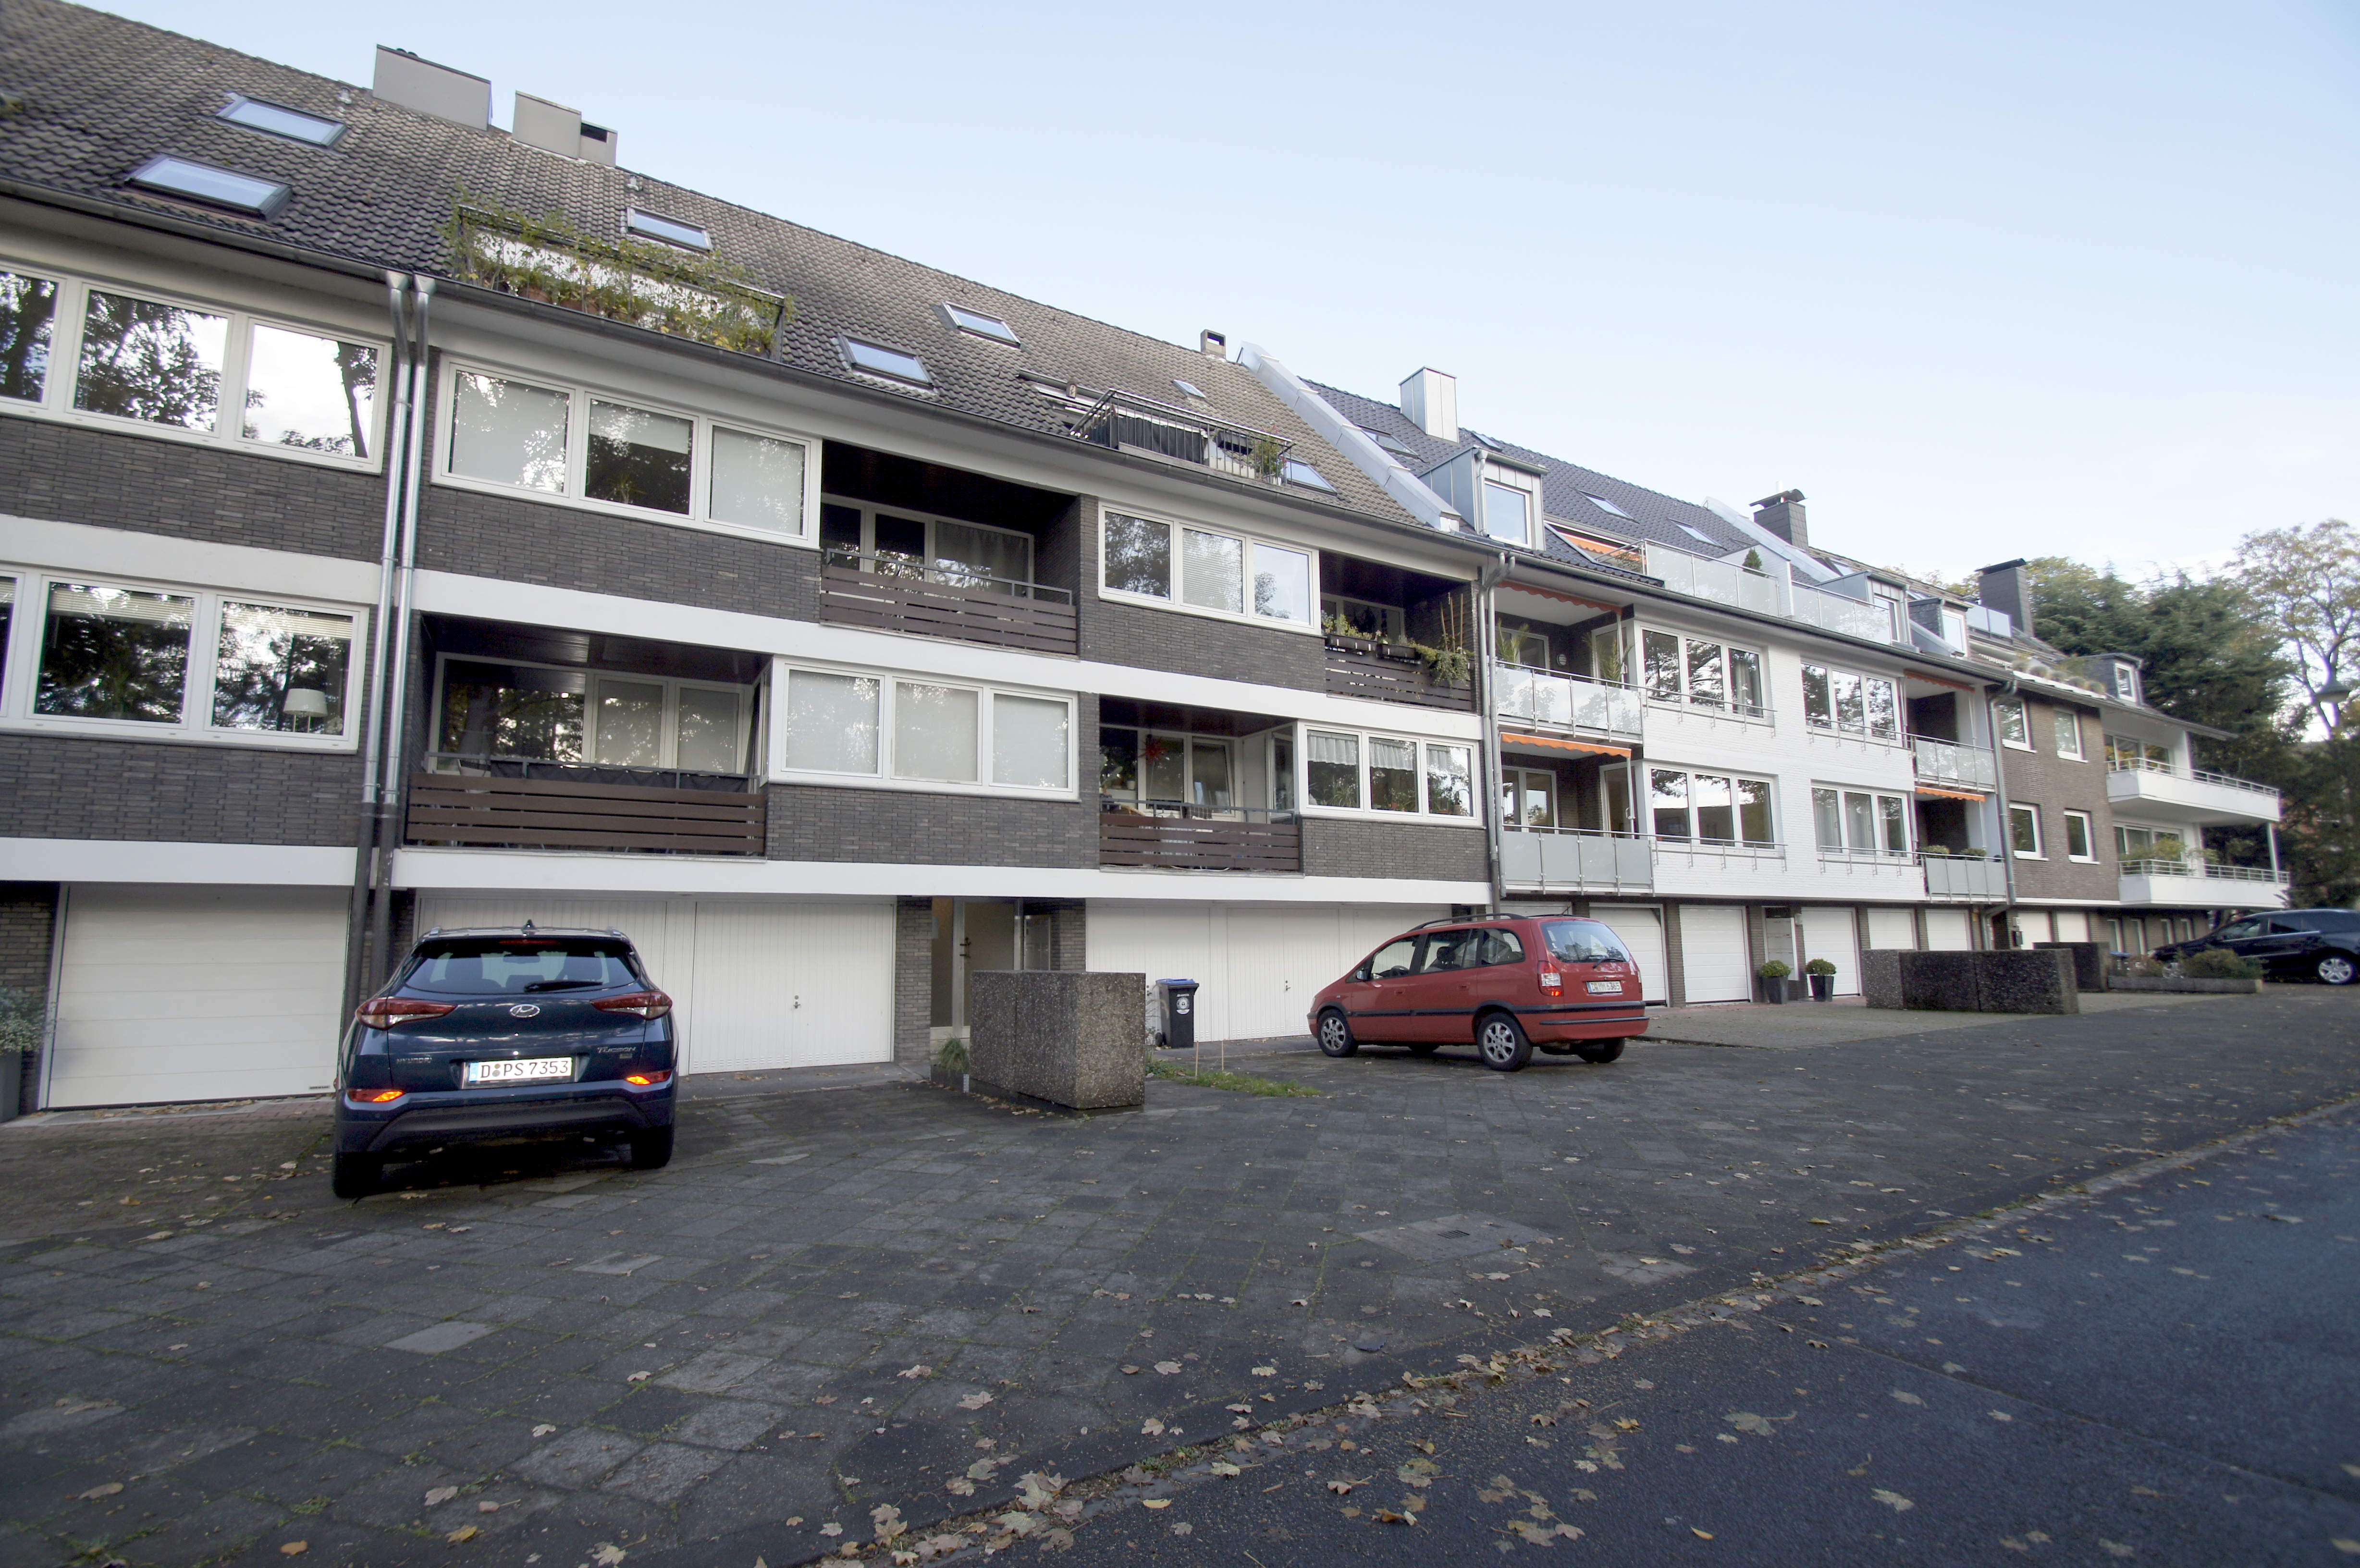 Vermietet! WOHNEN AM OSTPARK: Sanierte 3-Zimmer-Maisonettewohnung mit Duschbad und Balkon